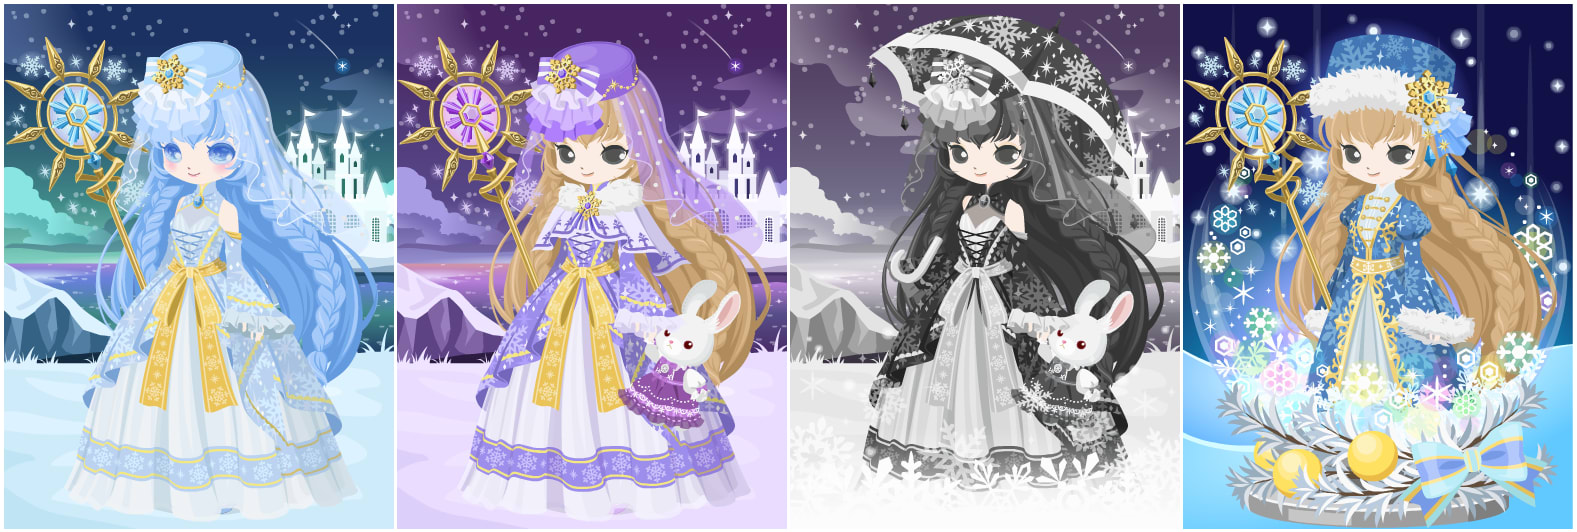 ニコッとタウン 16年12月限定8 雪の精霊のドレス Snow Spirit Dress Nicotto Town Avatar Fashion